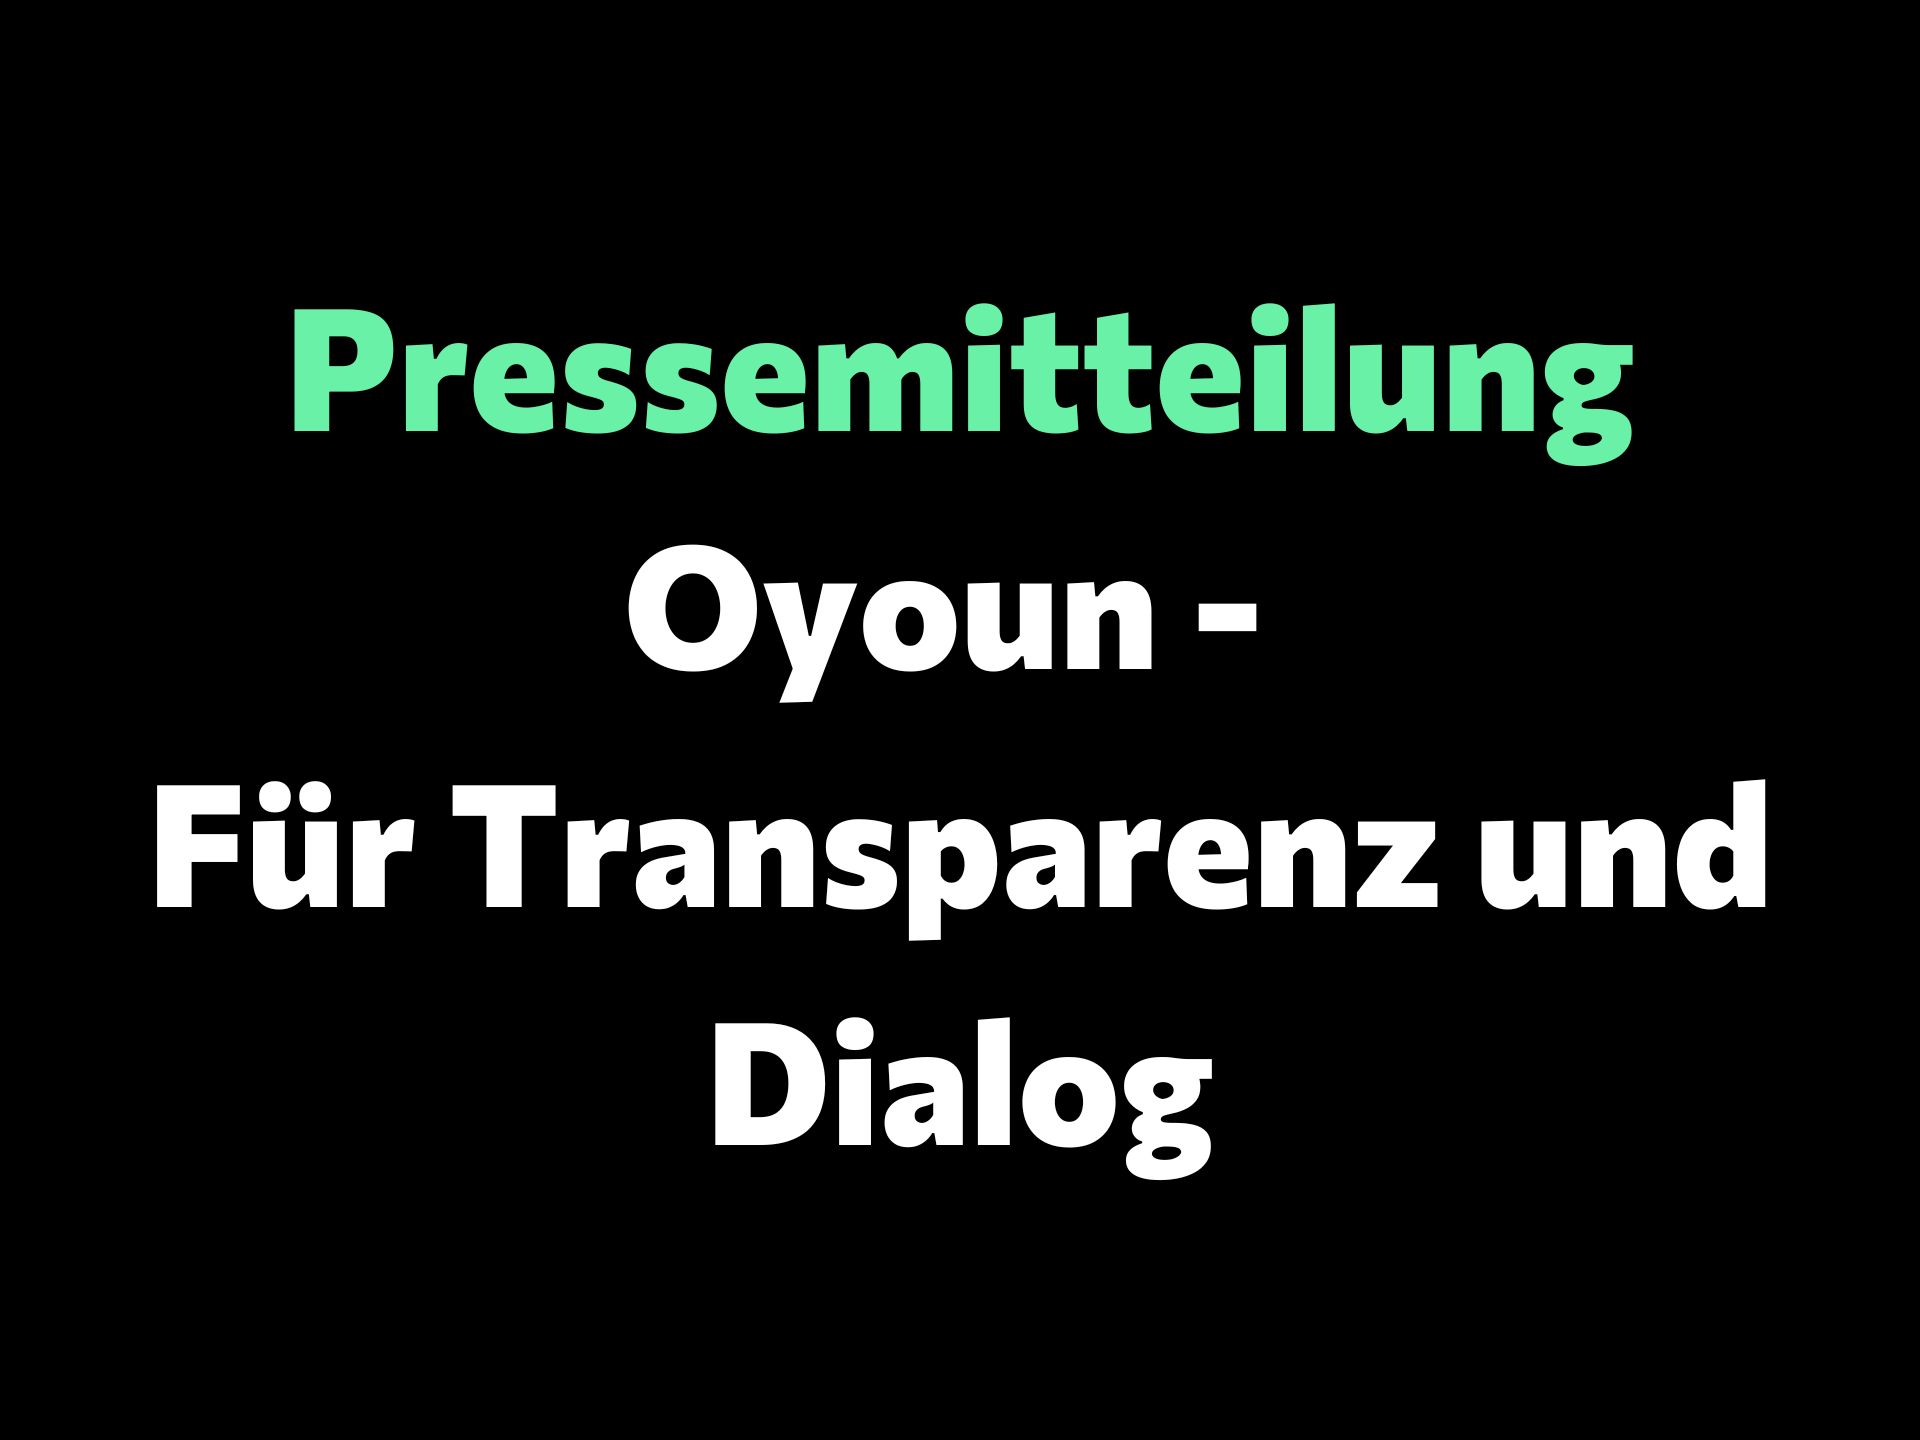 Oyoun - برای شفافیت و گفتگو